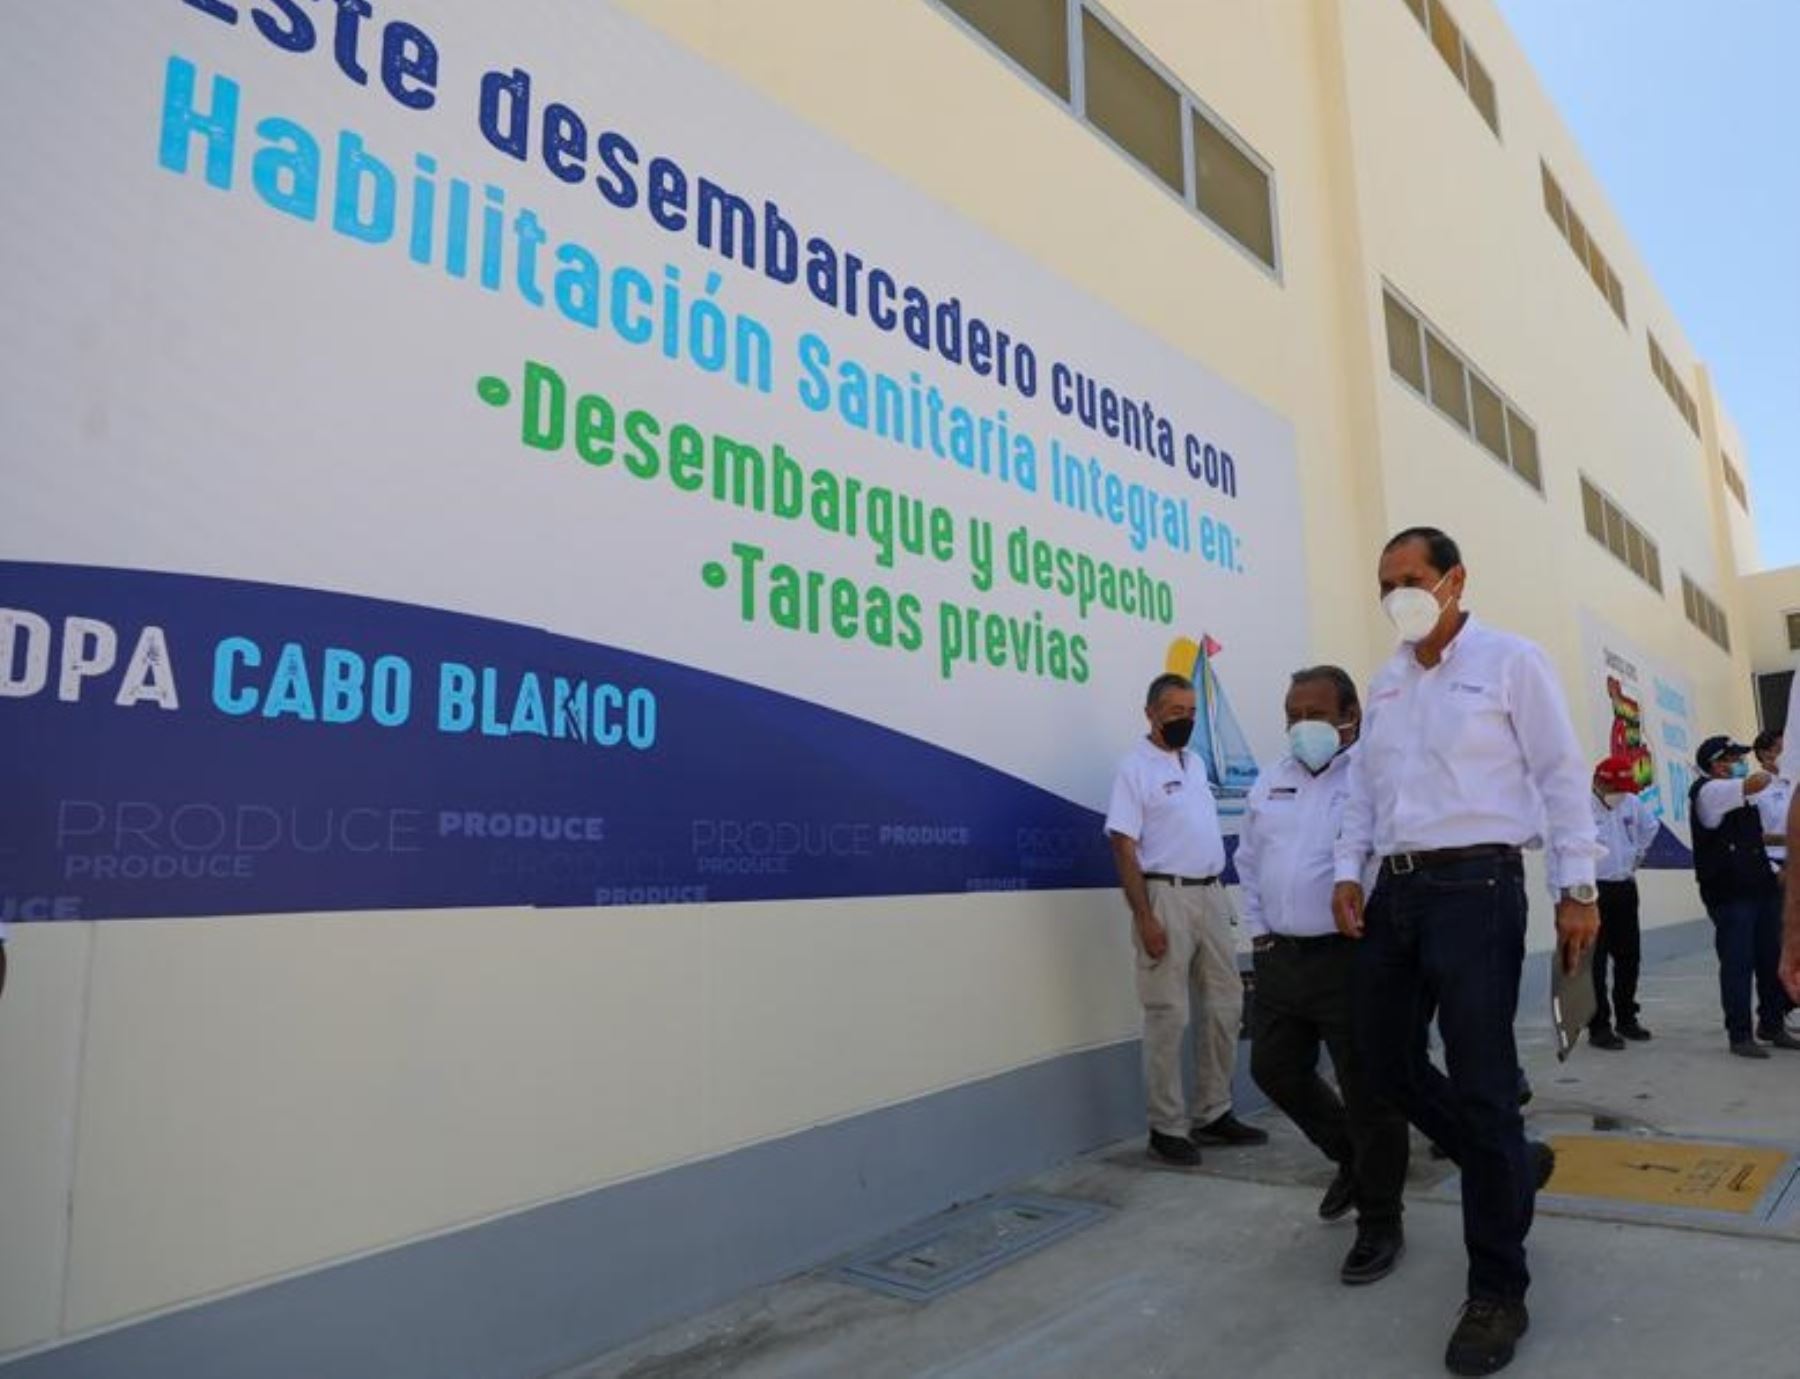 Piura: Produce invierte cerca de S/ 39 millones en desembarcadero pesquero Cabo Blanco